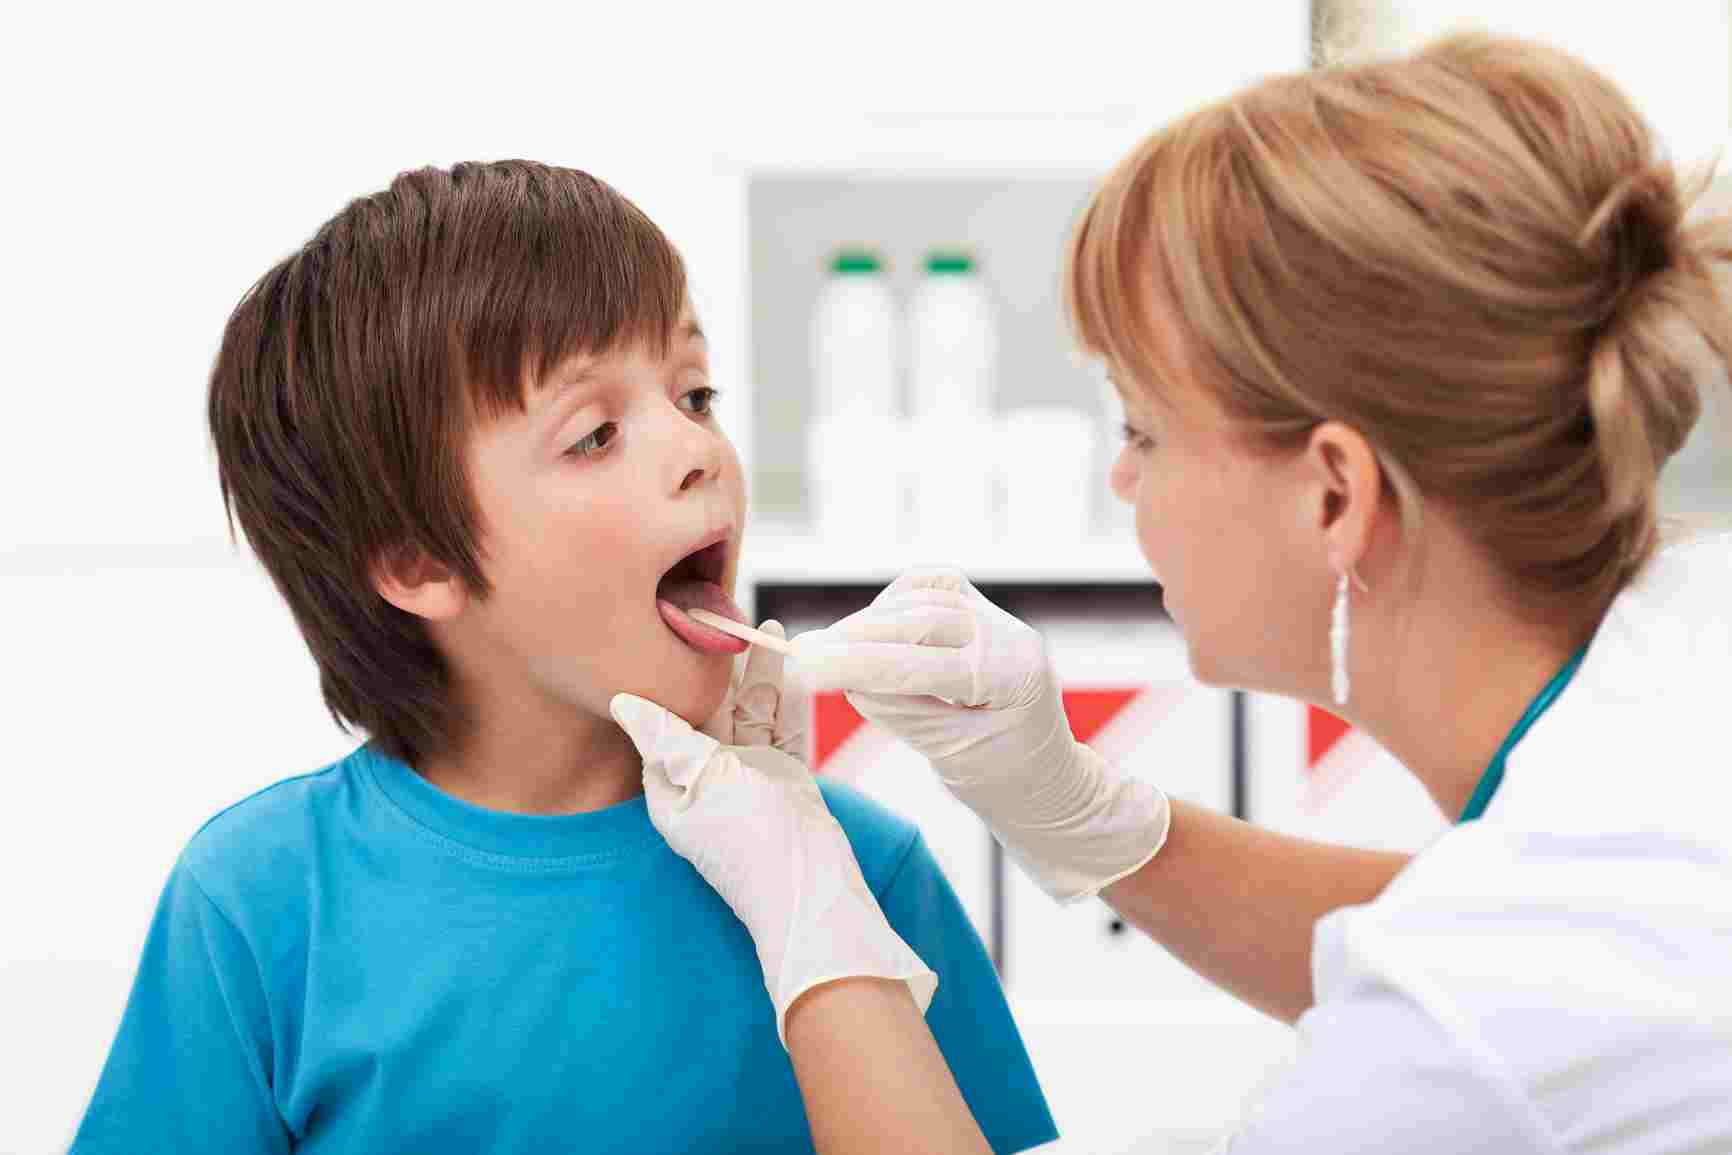 El Sumario - Un análisis reveló que los médicos deben abstenerse de anunciar cuando se va a inyectar a un niño pues la mente los condiciona para sentir mayor impresión